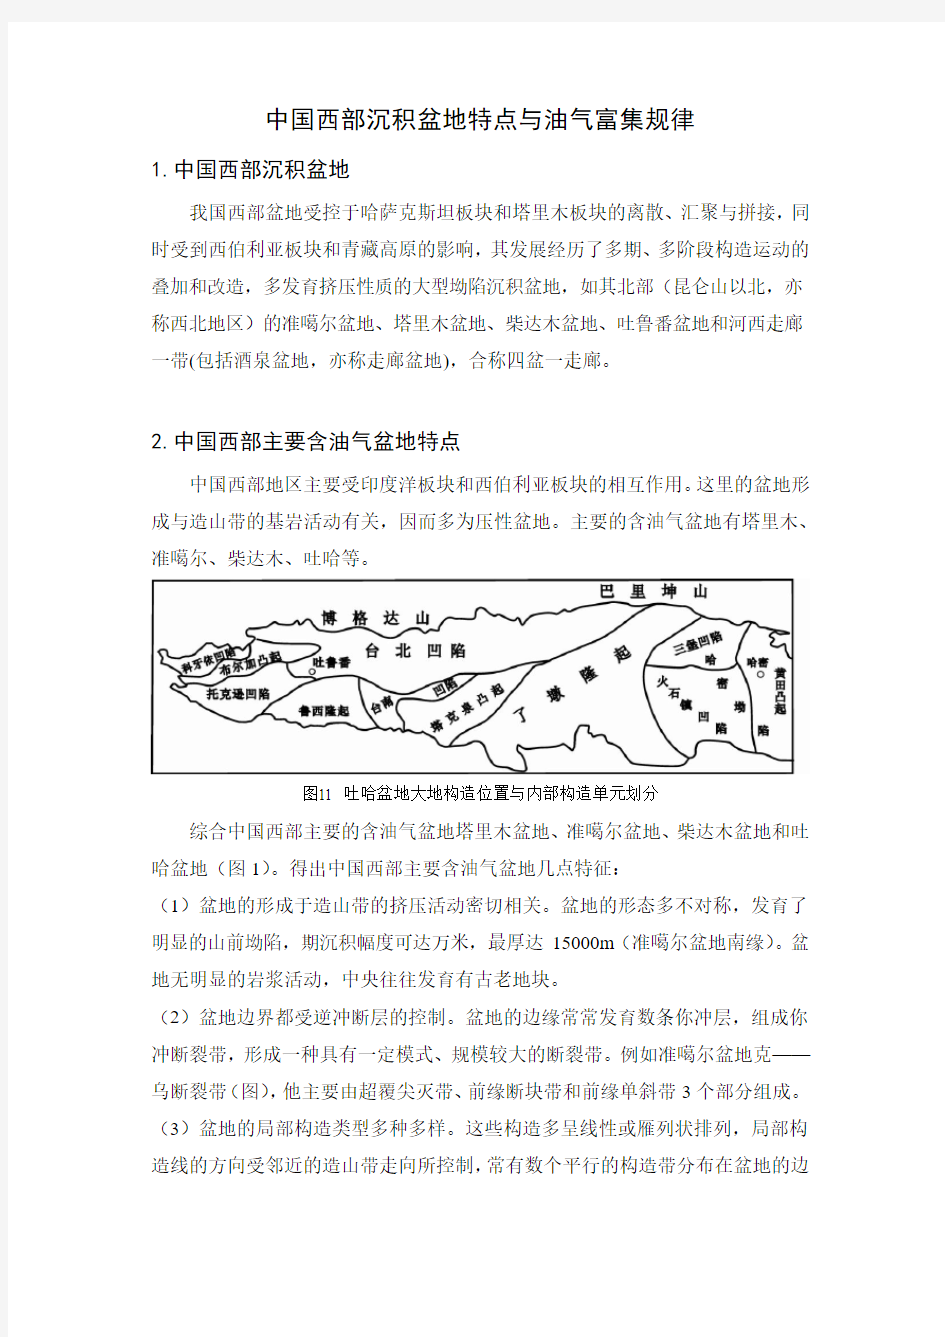 中国西部沉积盆地特点与油气富集规律(简)